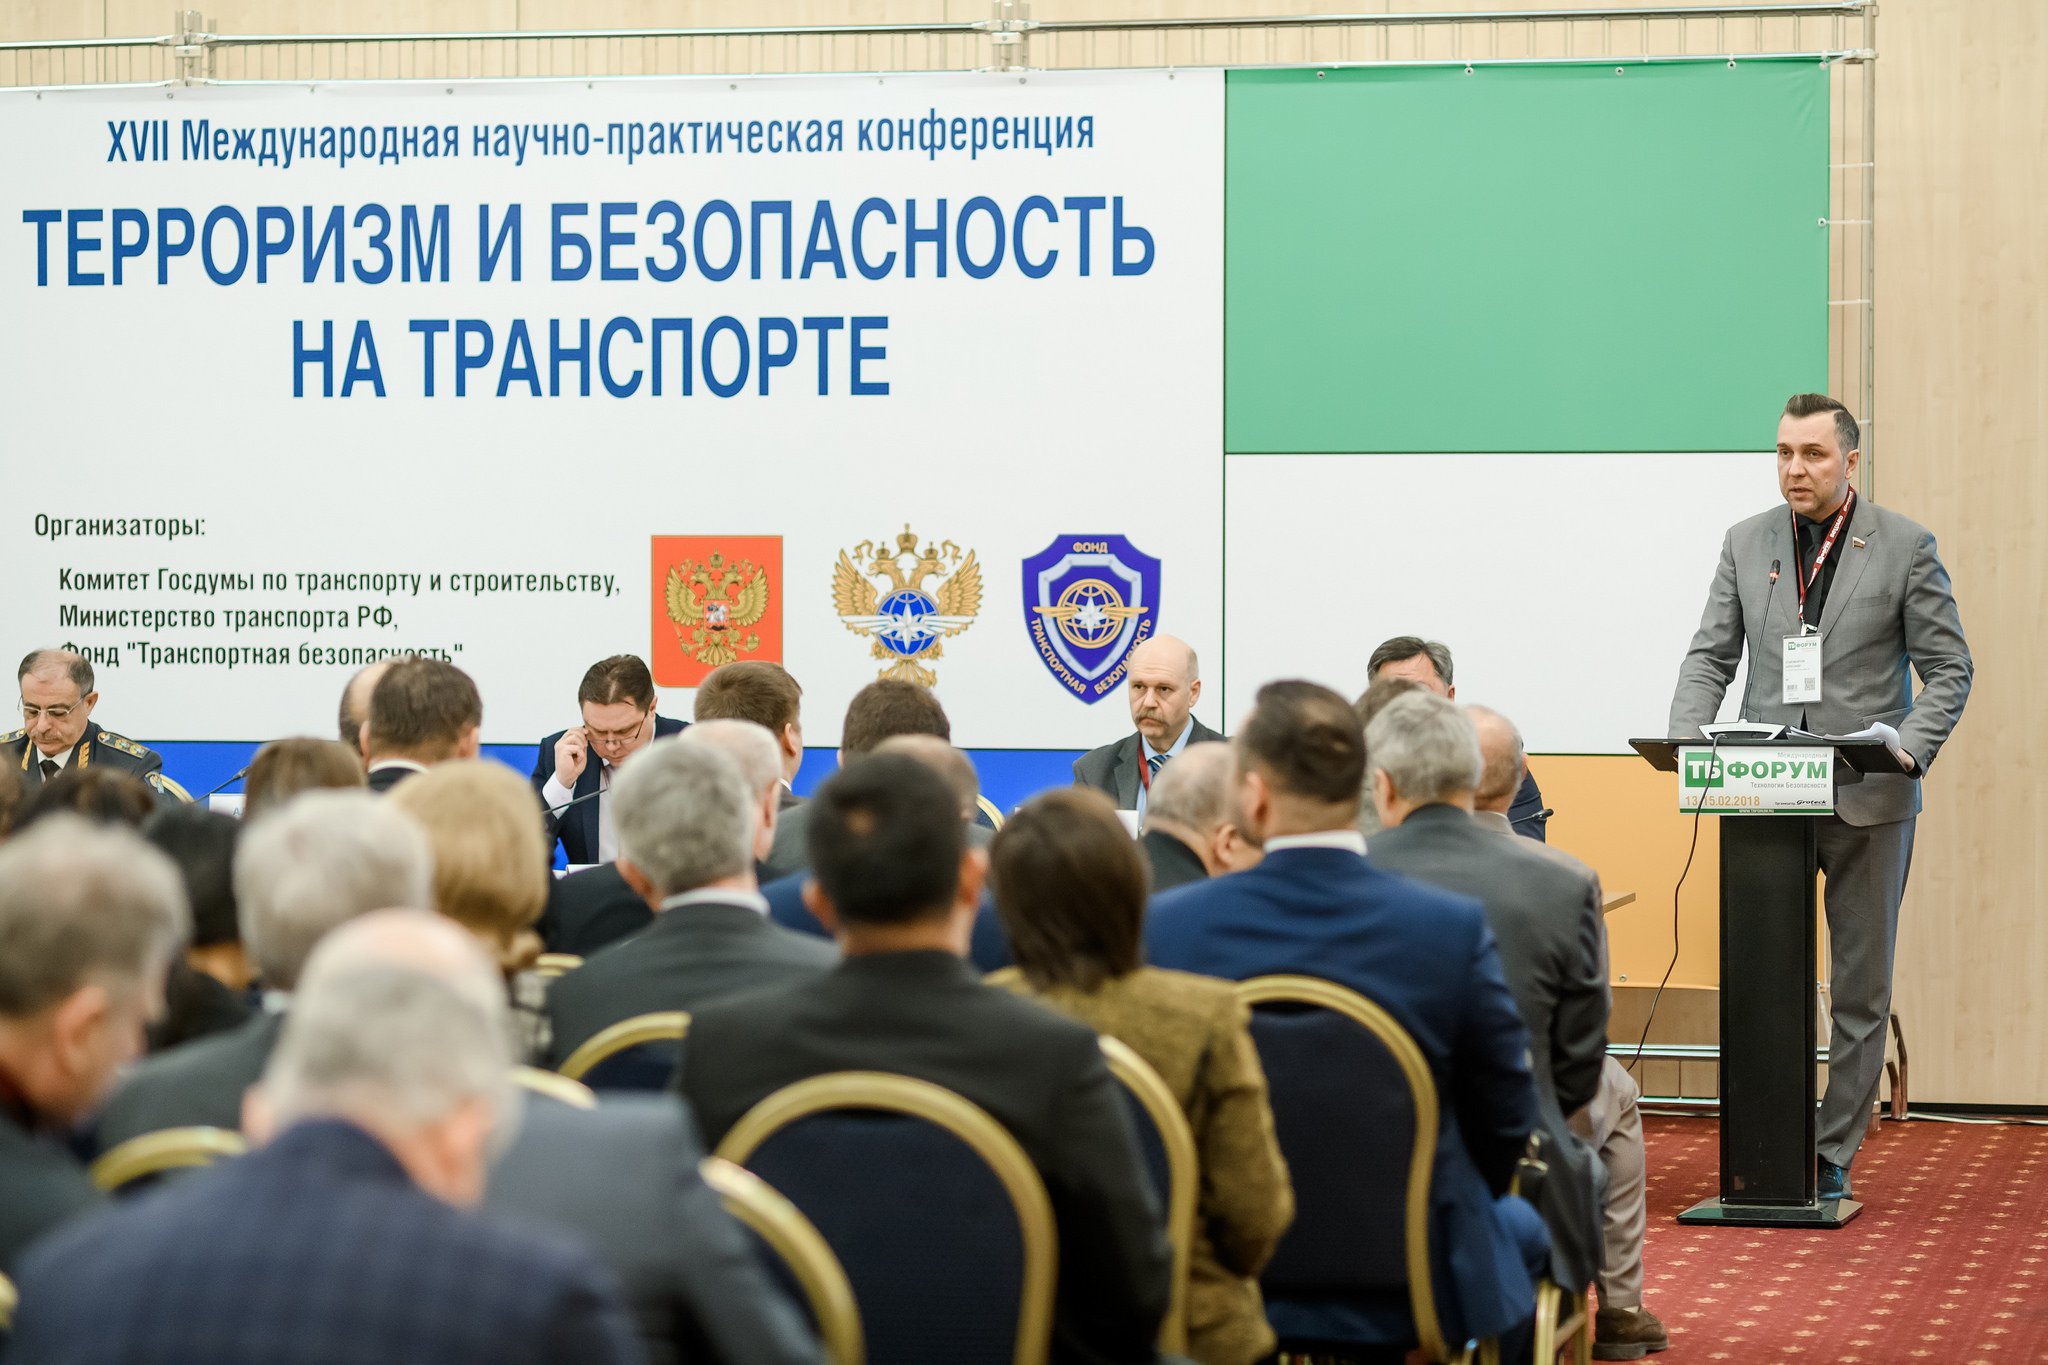 Более 70 млн рублей потратит Росавтодор на обслуживание систем обеспечения транспортной безопасности